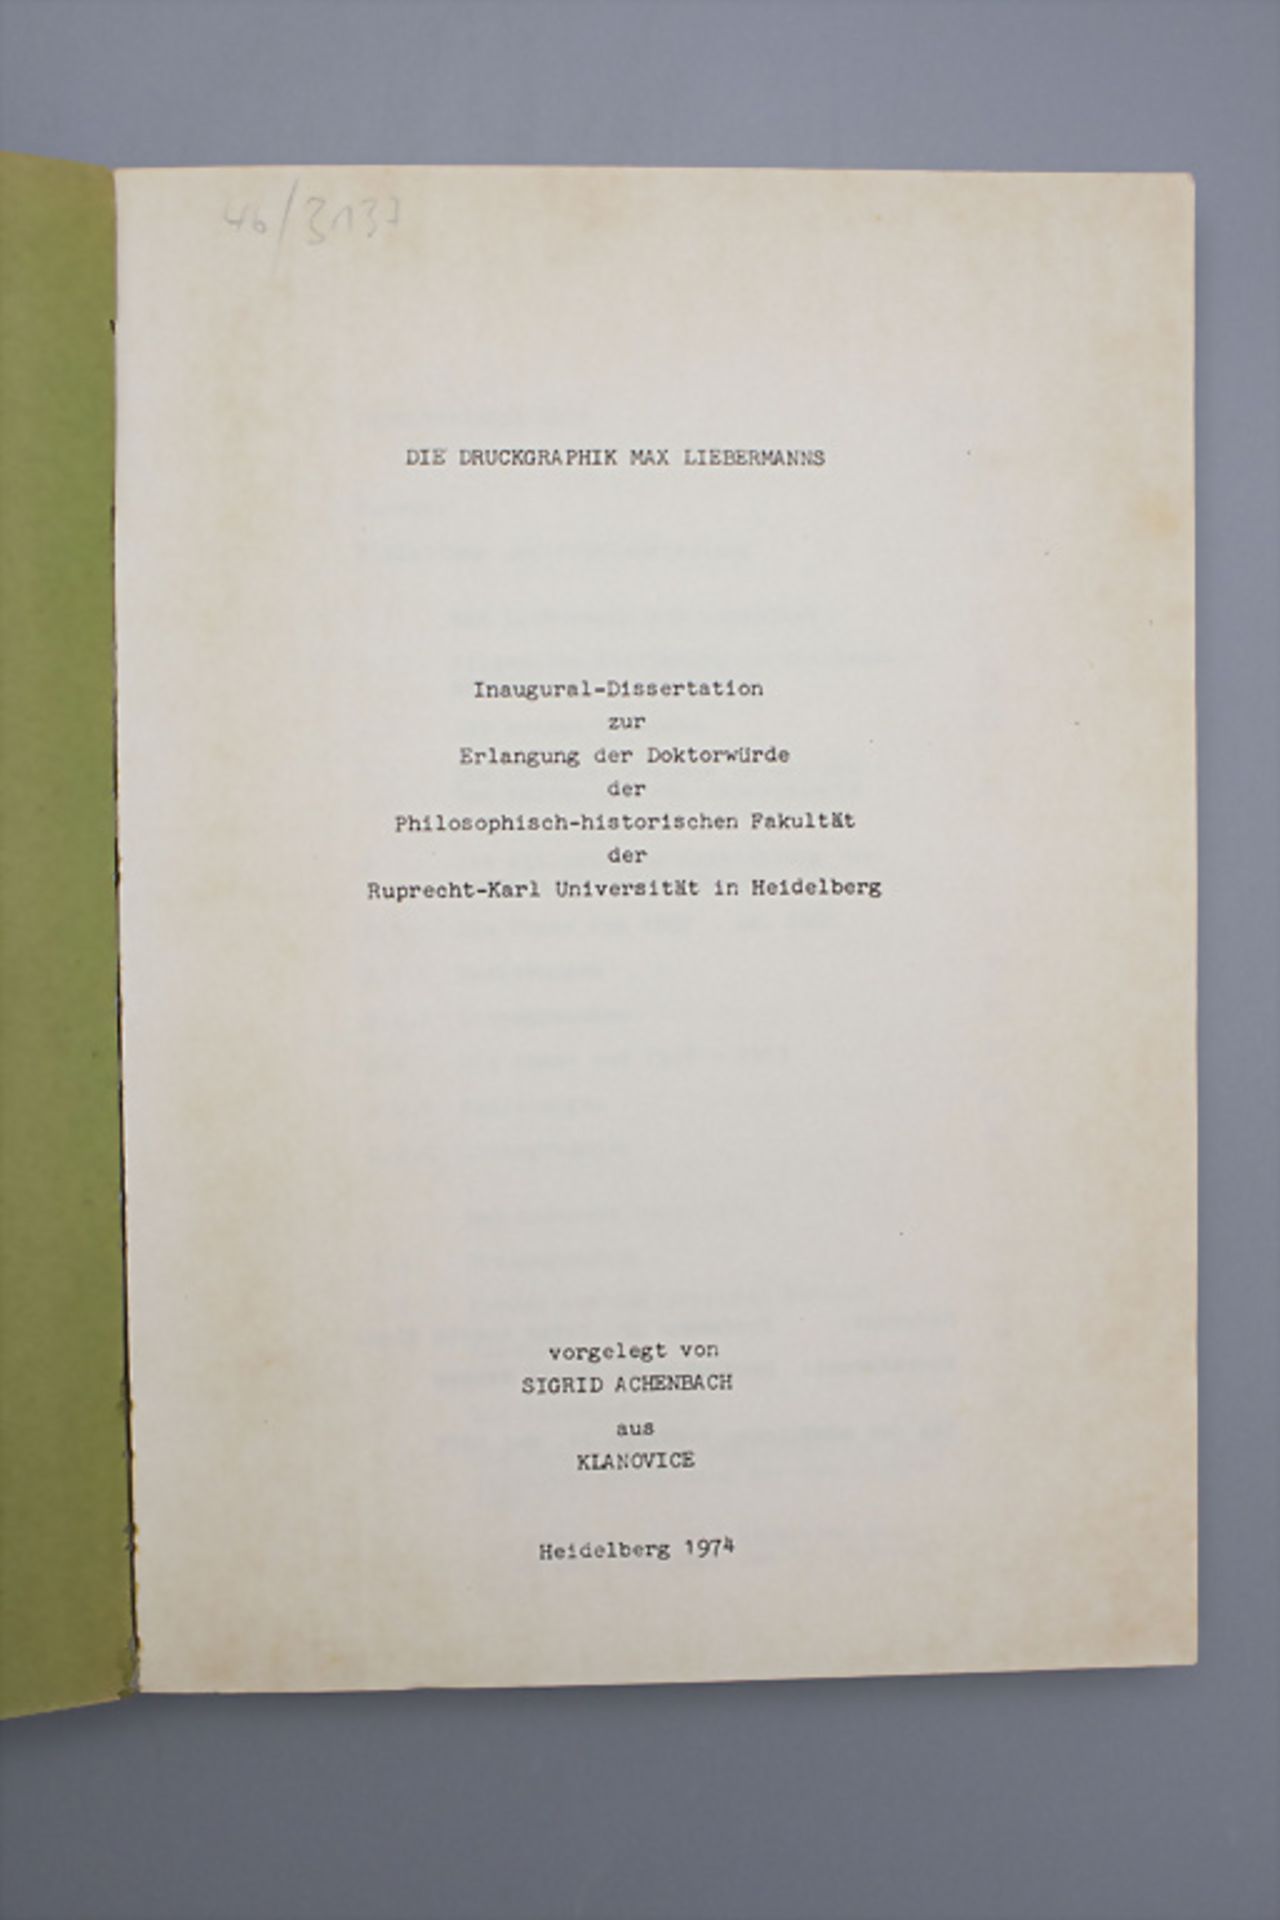 Sigrid Achenbach: 'Die Druckgrafik Max Liebermanns', Dissertation, Heidelberg, 1974 - Bild 3 aus 6